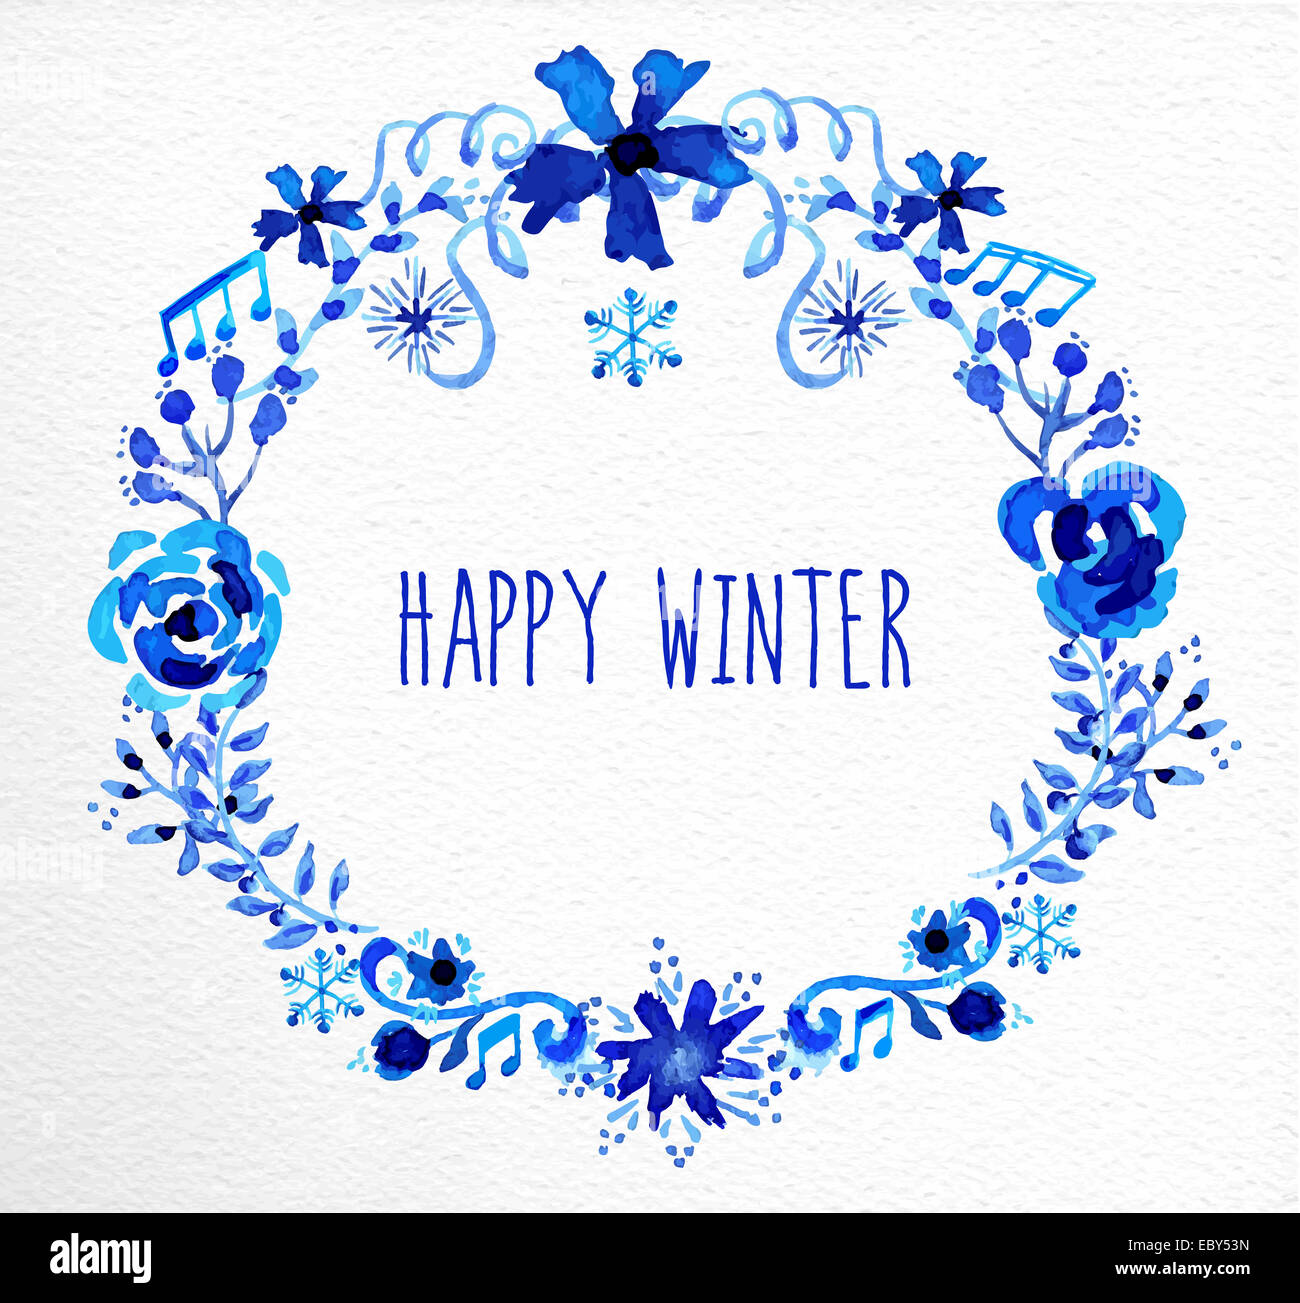 Heureux hiver garland avec fleurs et flocons bleu aquarelle éléments. Idéal pour la carte de vœux, imprimer une affiche ou un panneau de signalisation. Banque D'Images